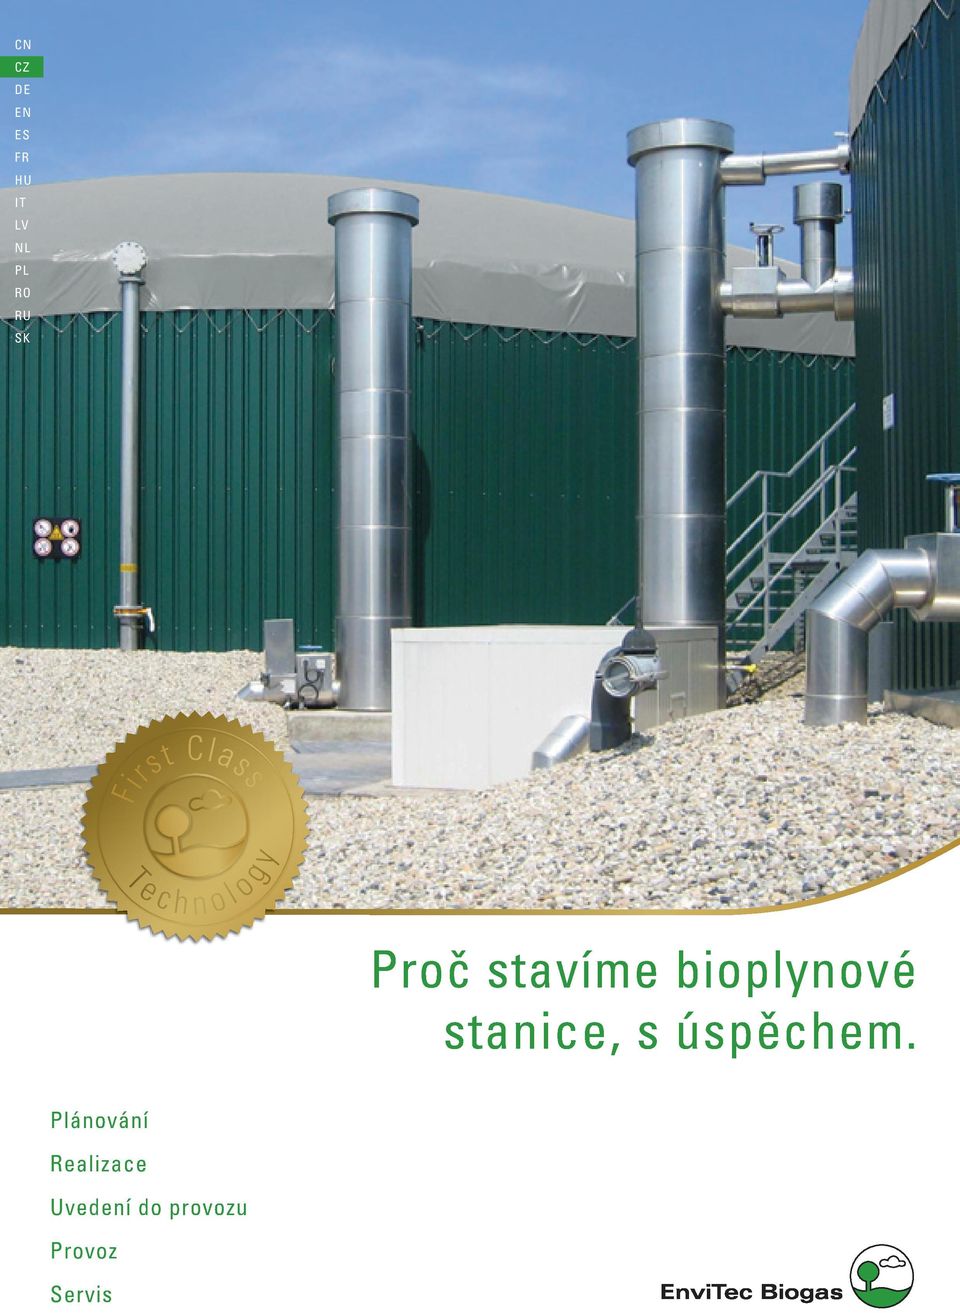 Proč stavíme bioplynové stanice, s úspěchem.